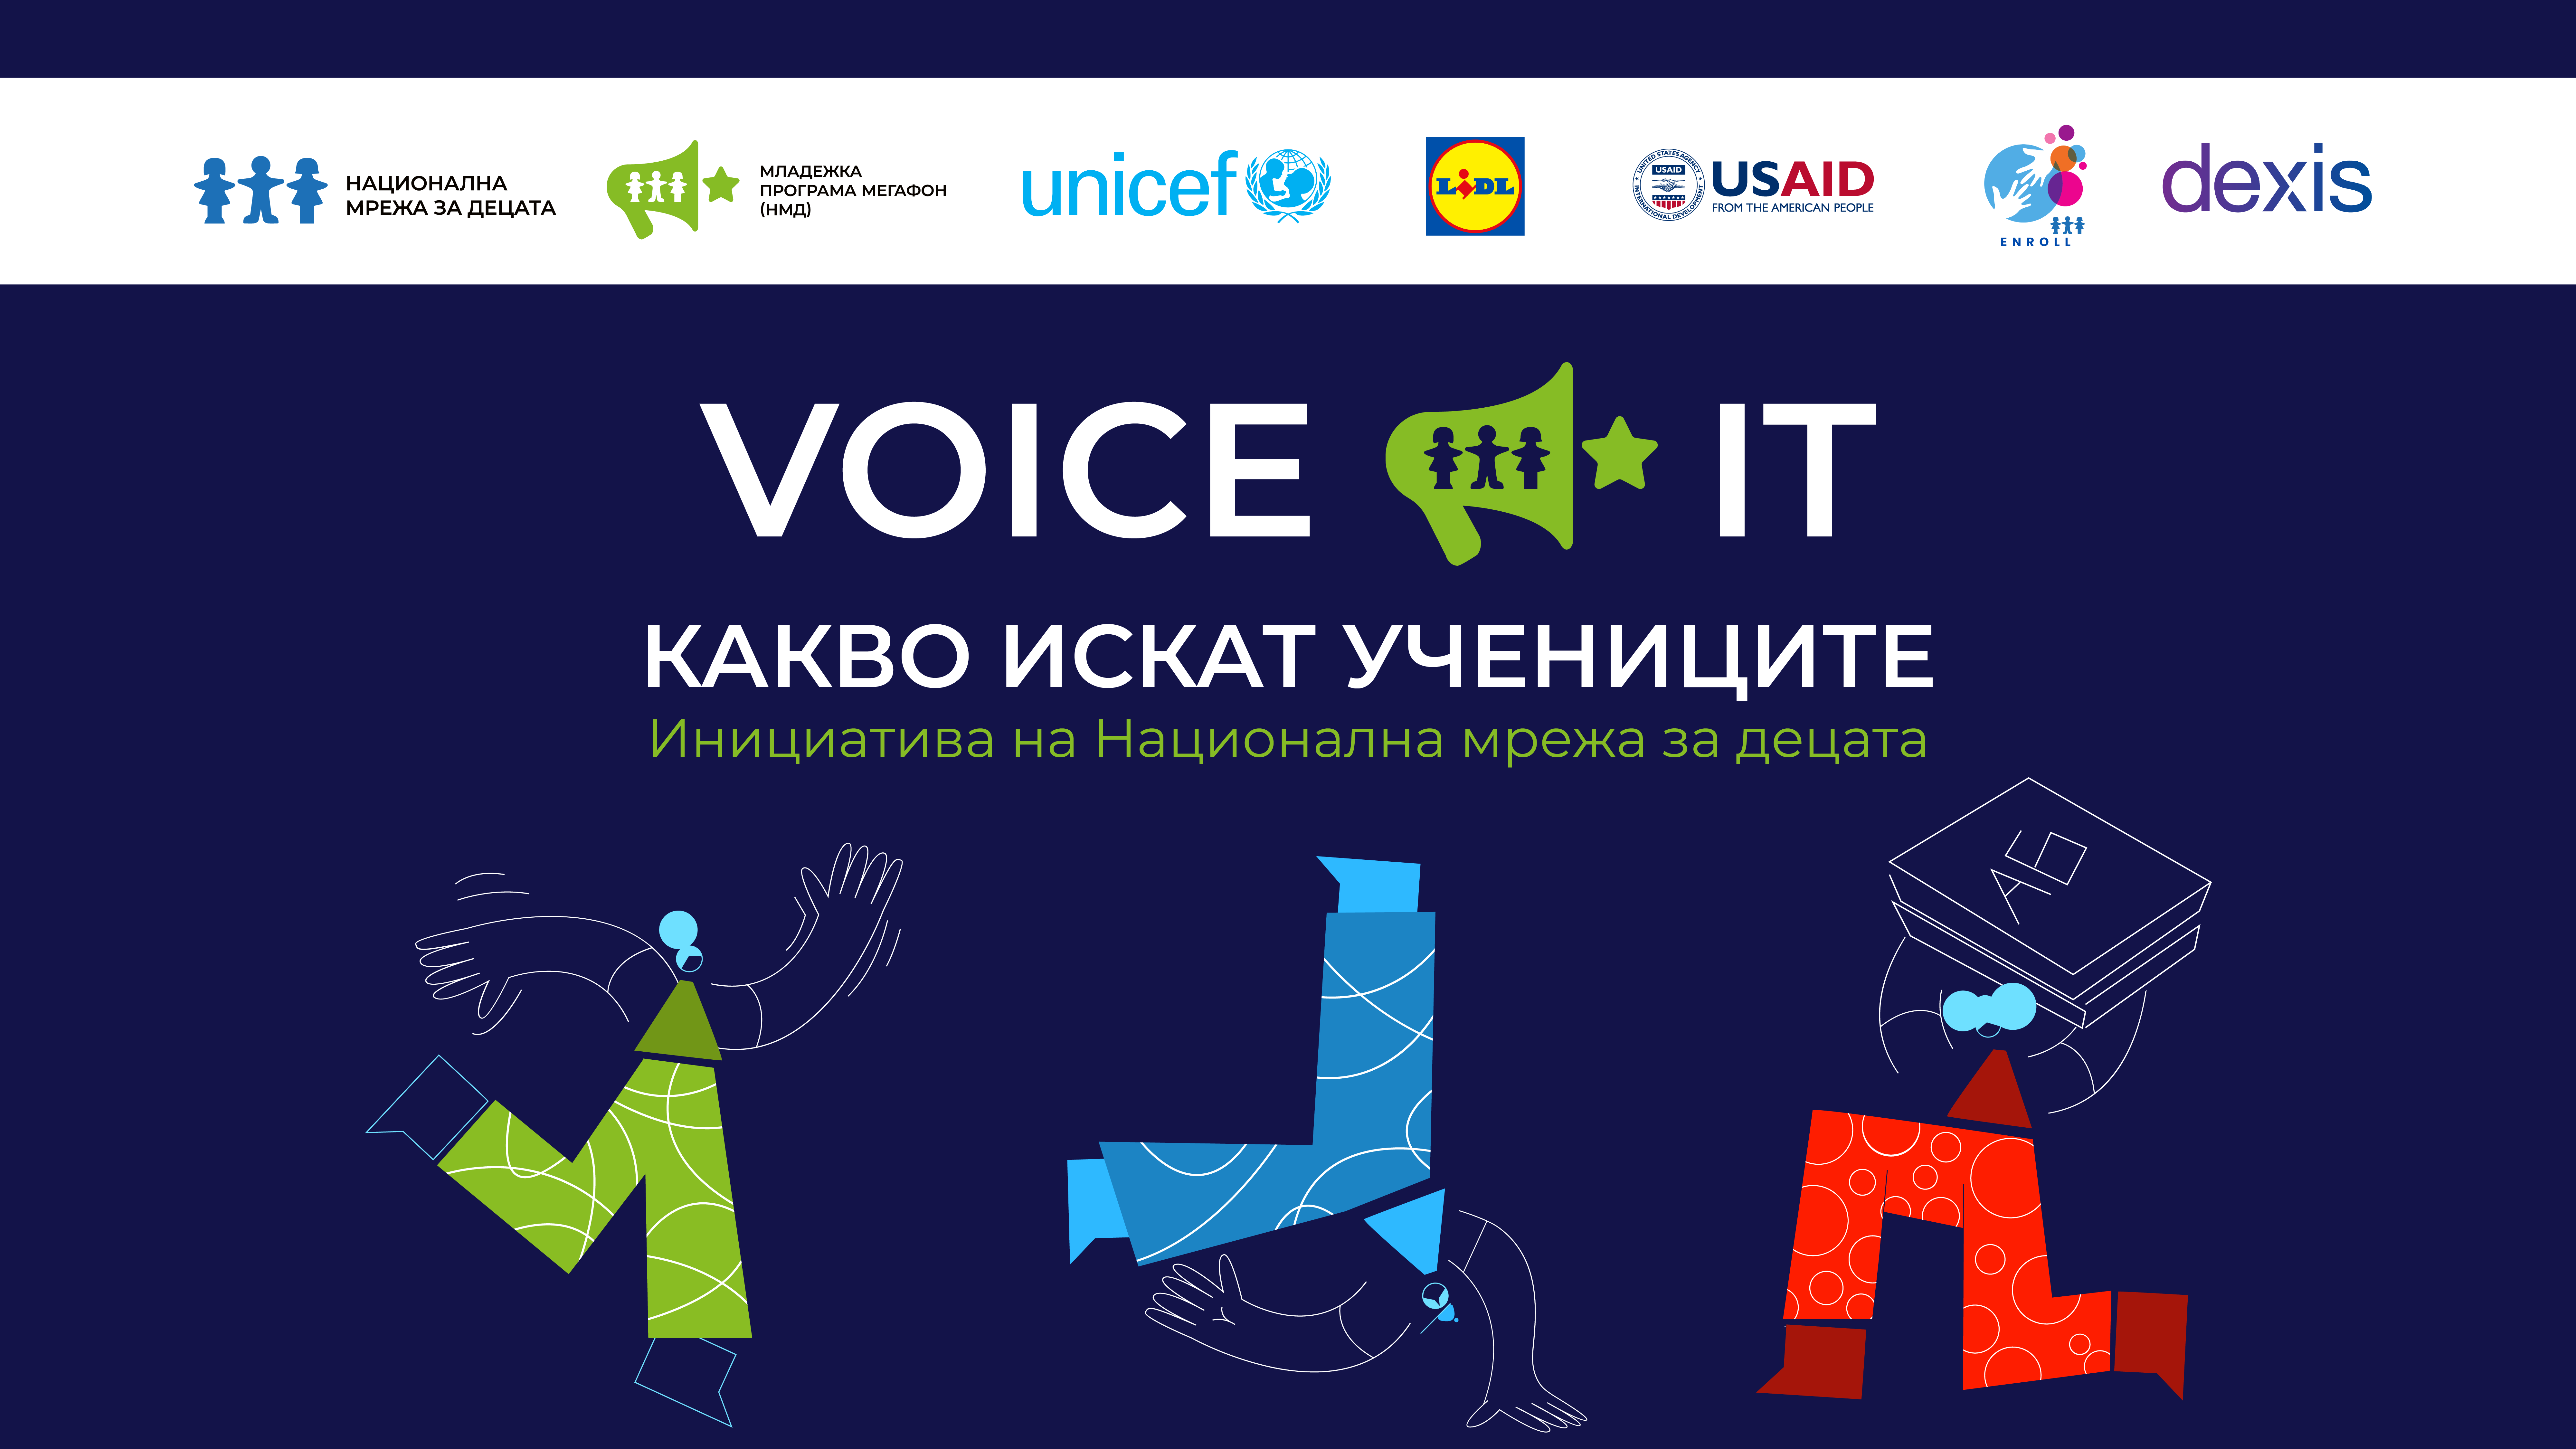 Младежи обсъждат с политици тормоза в училище и учебната програма в деветото издание на VOICE IT